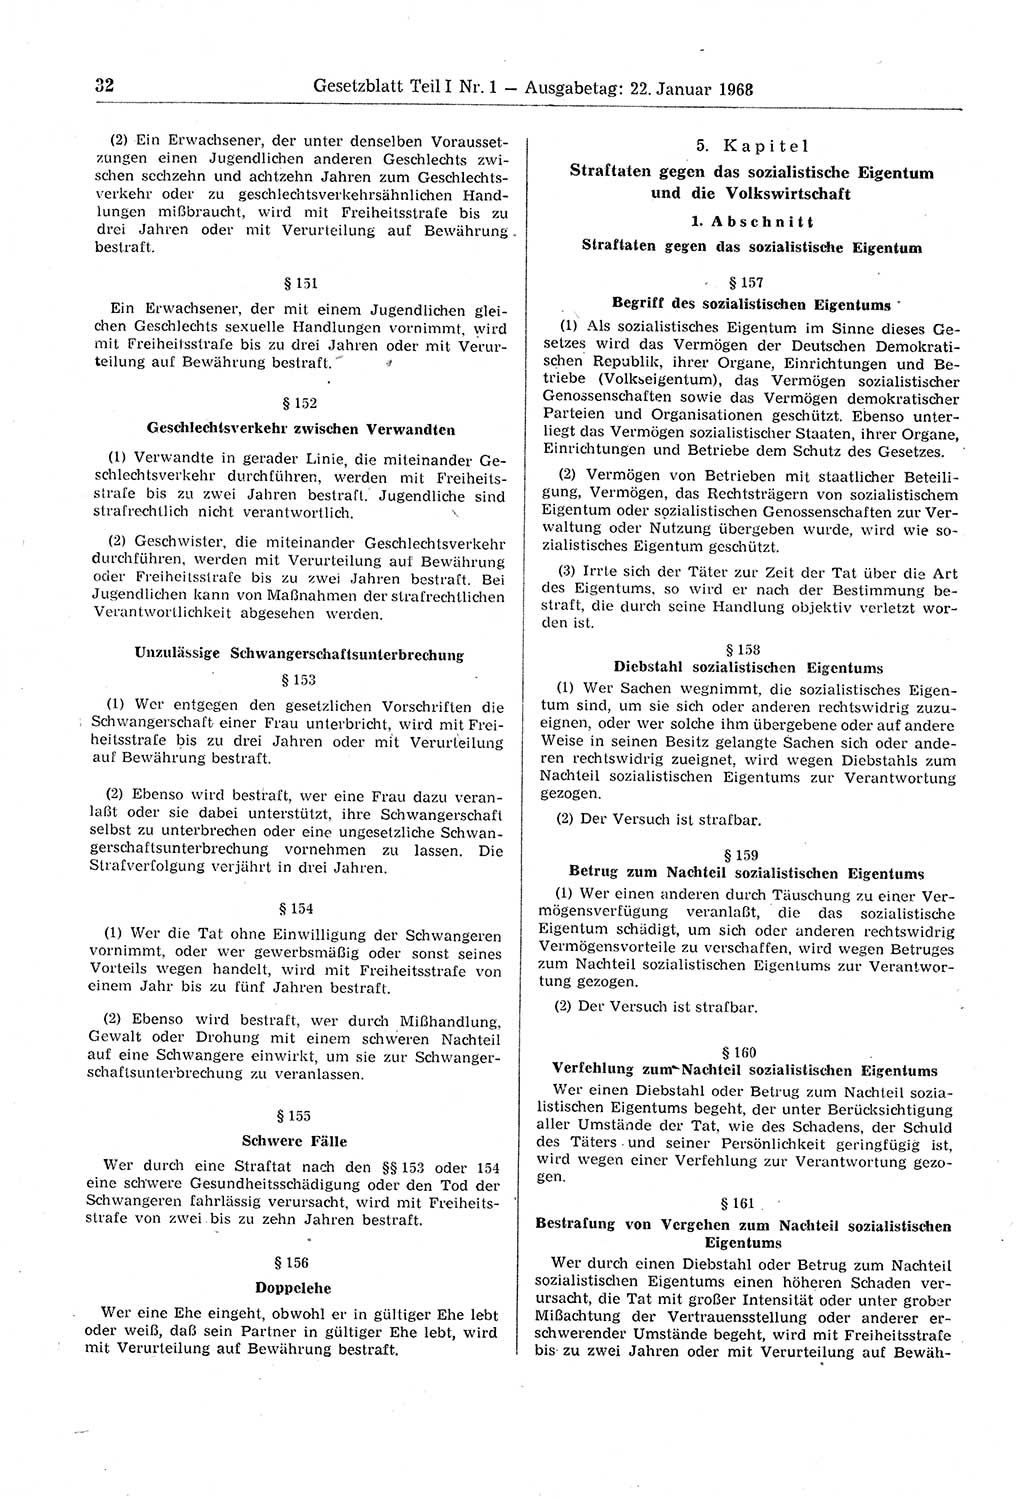 Gesetzblatt (GBl.) der Deutschen Demokratischen Republik (DDR) Teil Ⅰ 1968, Seite 32 (GBl. DDR Ⅰ 1968, S. 32)